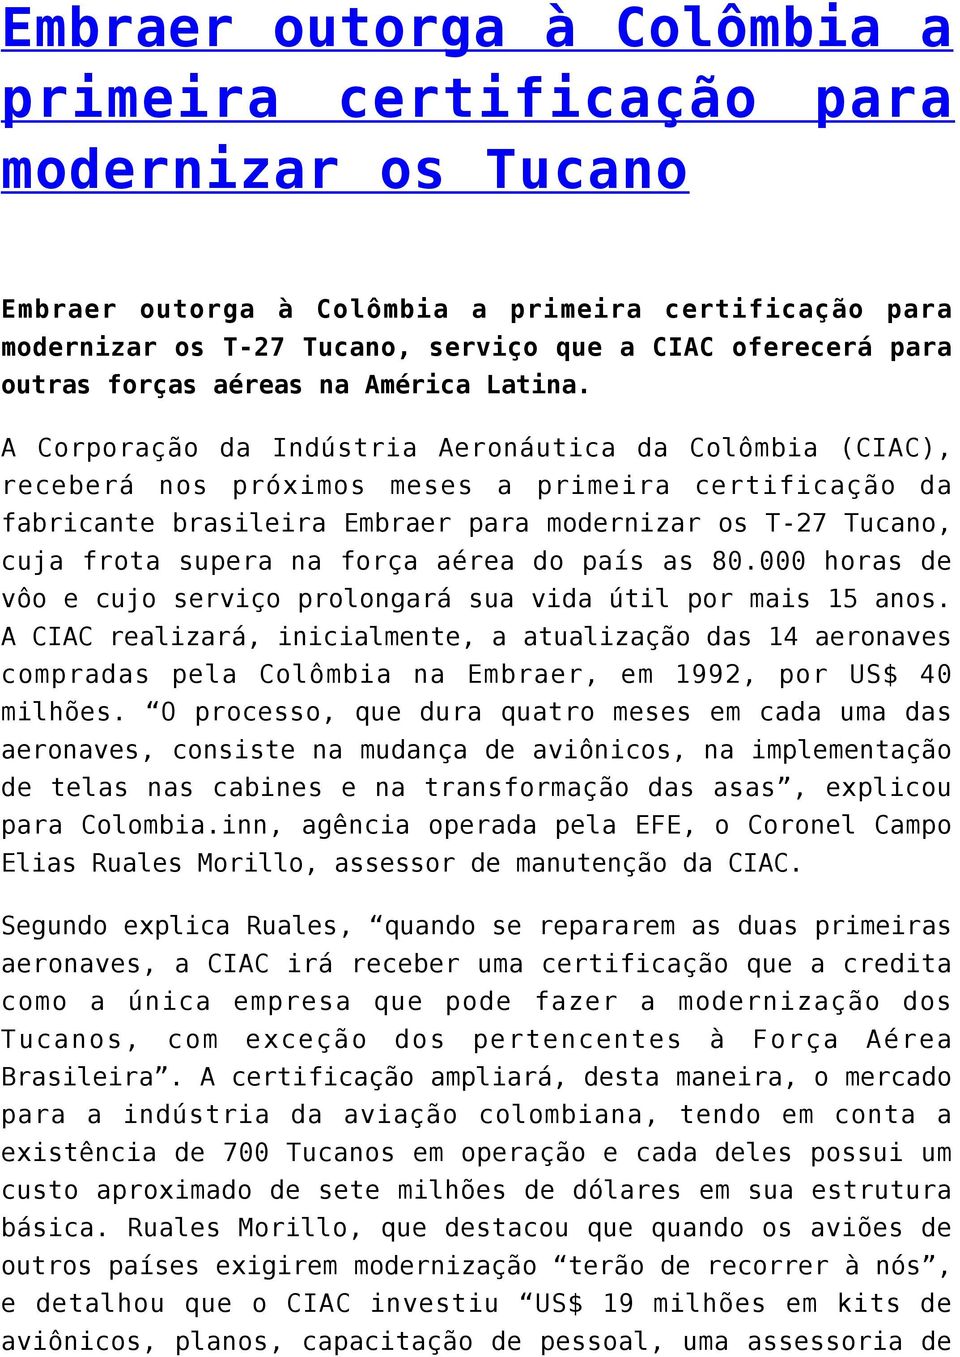 A Corporação da Indústria Aeronáutica da Colômbia (CIAC), receberá nos próximos meses a primeira certificação da fabricante brasileira Embraer para modernizar os T-27 Tucano, cuja frota supera na